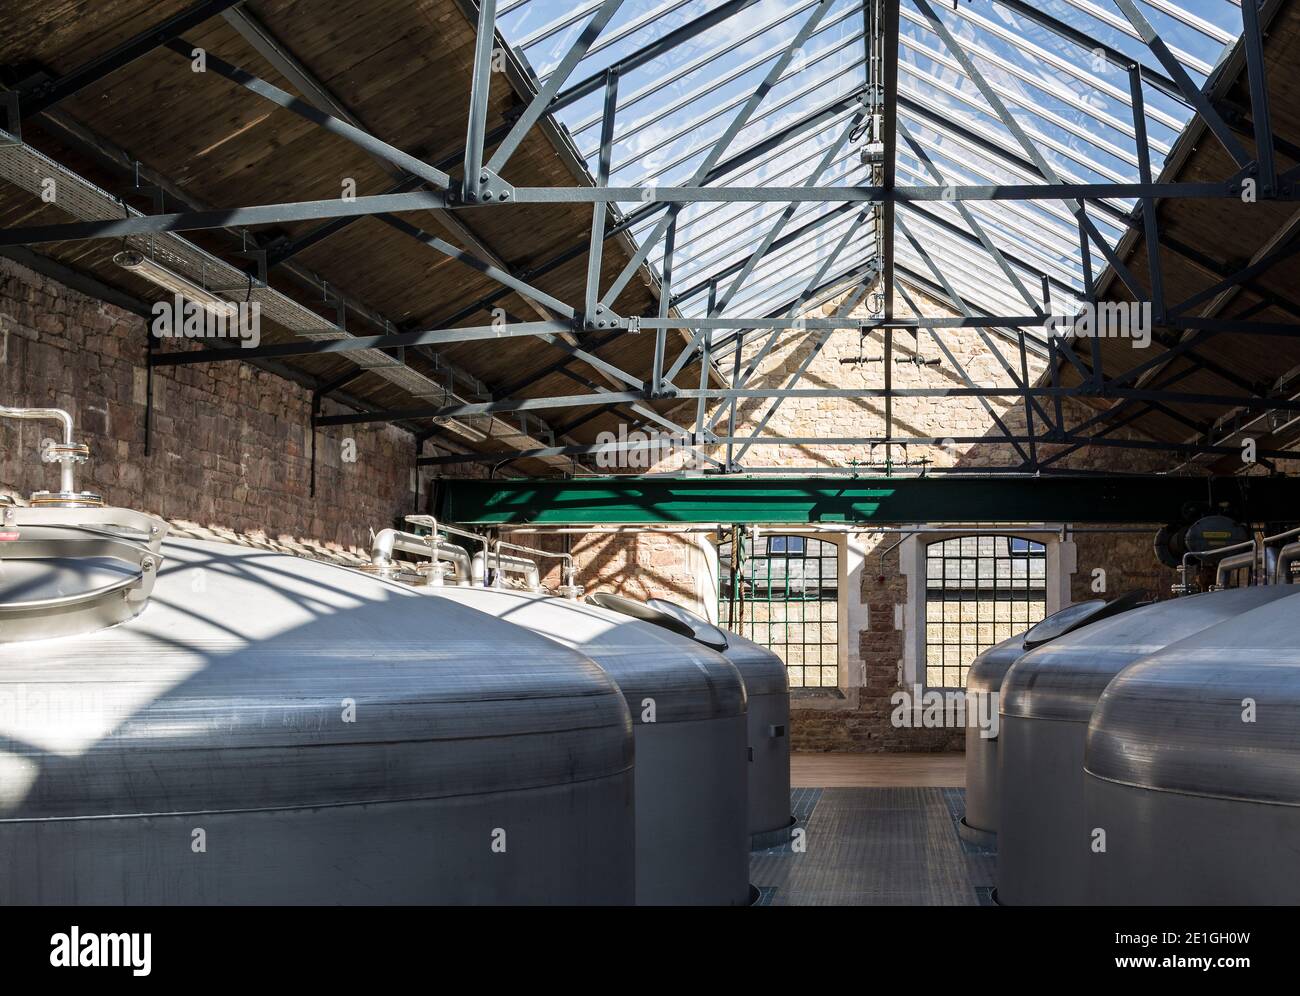 Vue intérieure de la distillerie Borders, Hawick, Écosse, Royaume-Uni. Lauréat du prix Architects Journal Retrofit 2018 et du prix Civic Trust 2019 Banque D'Images